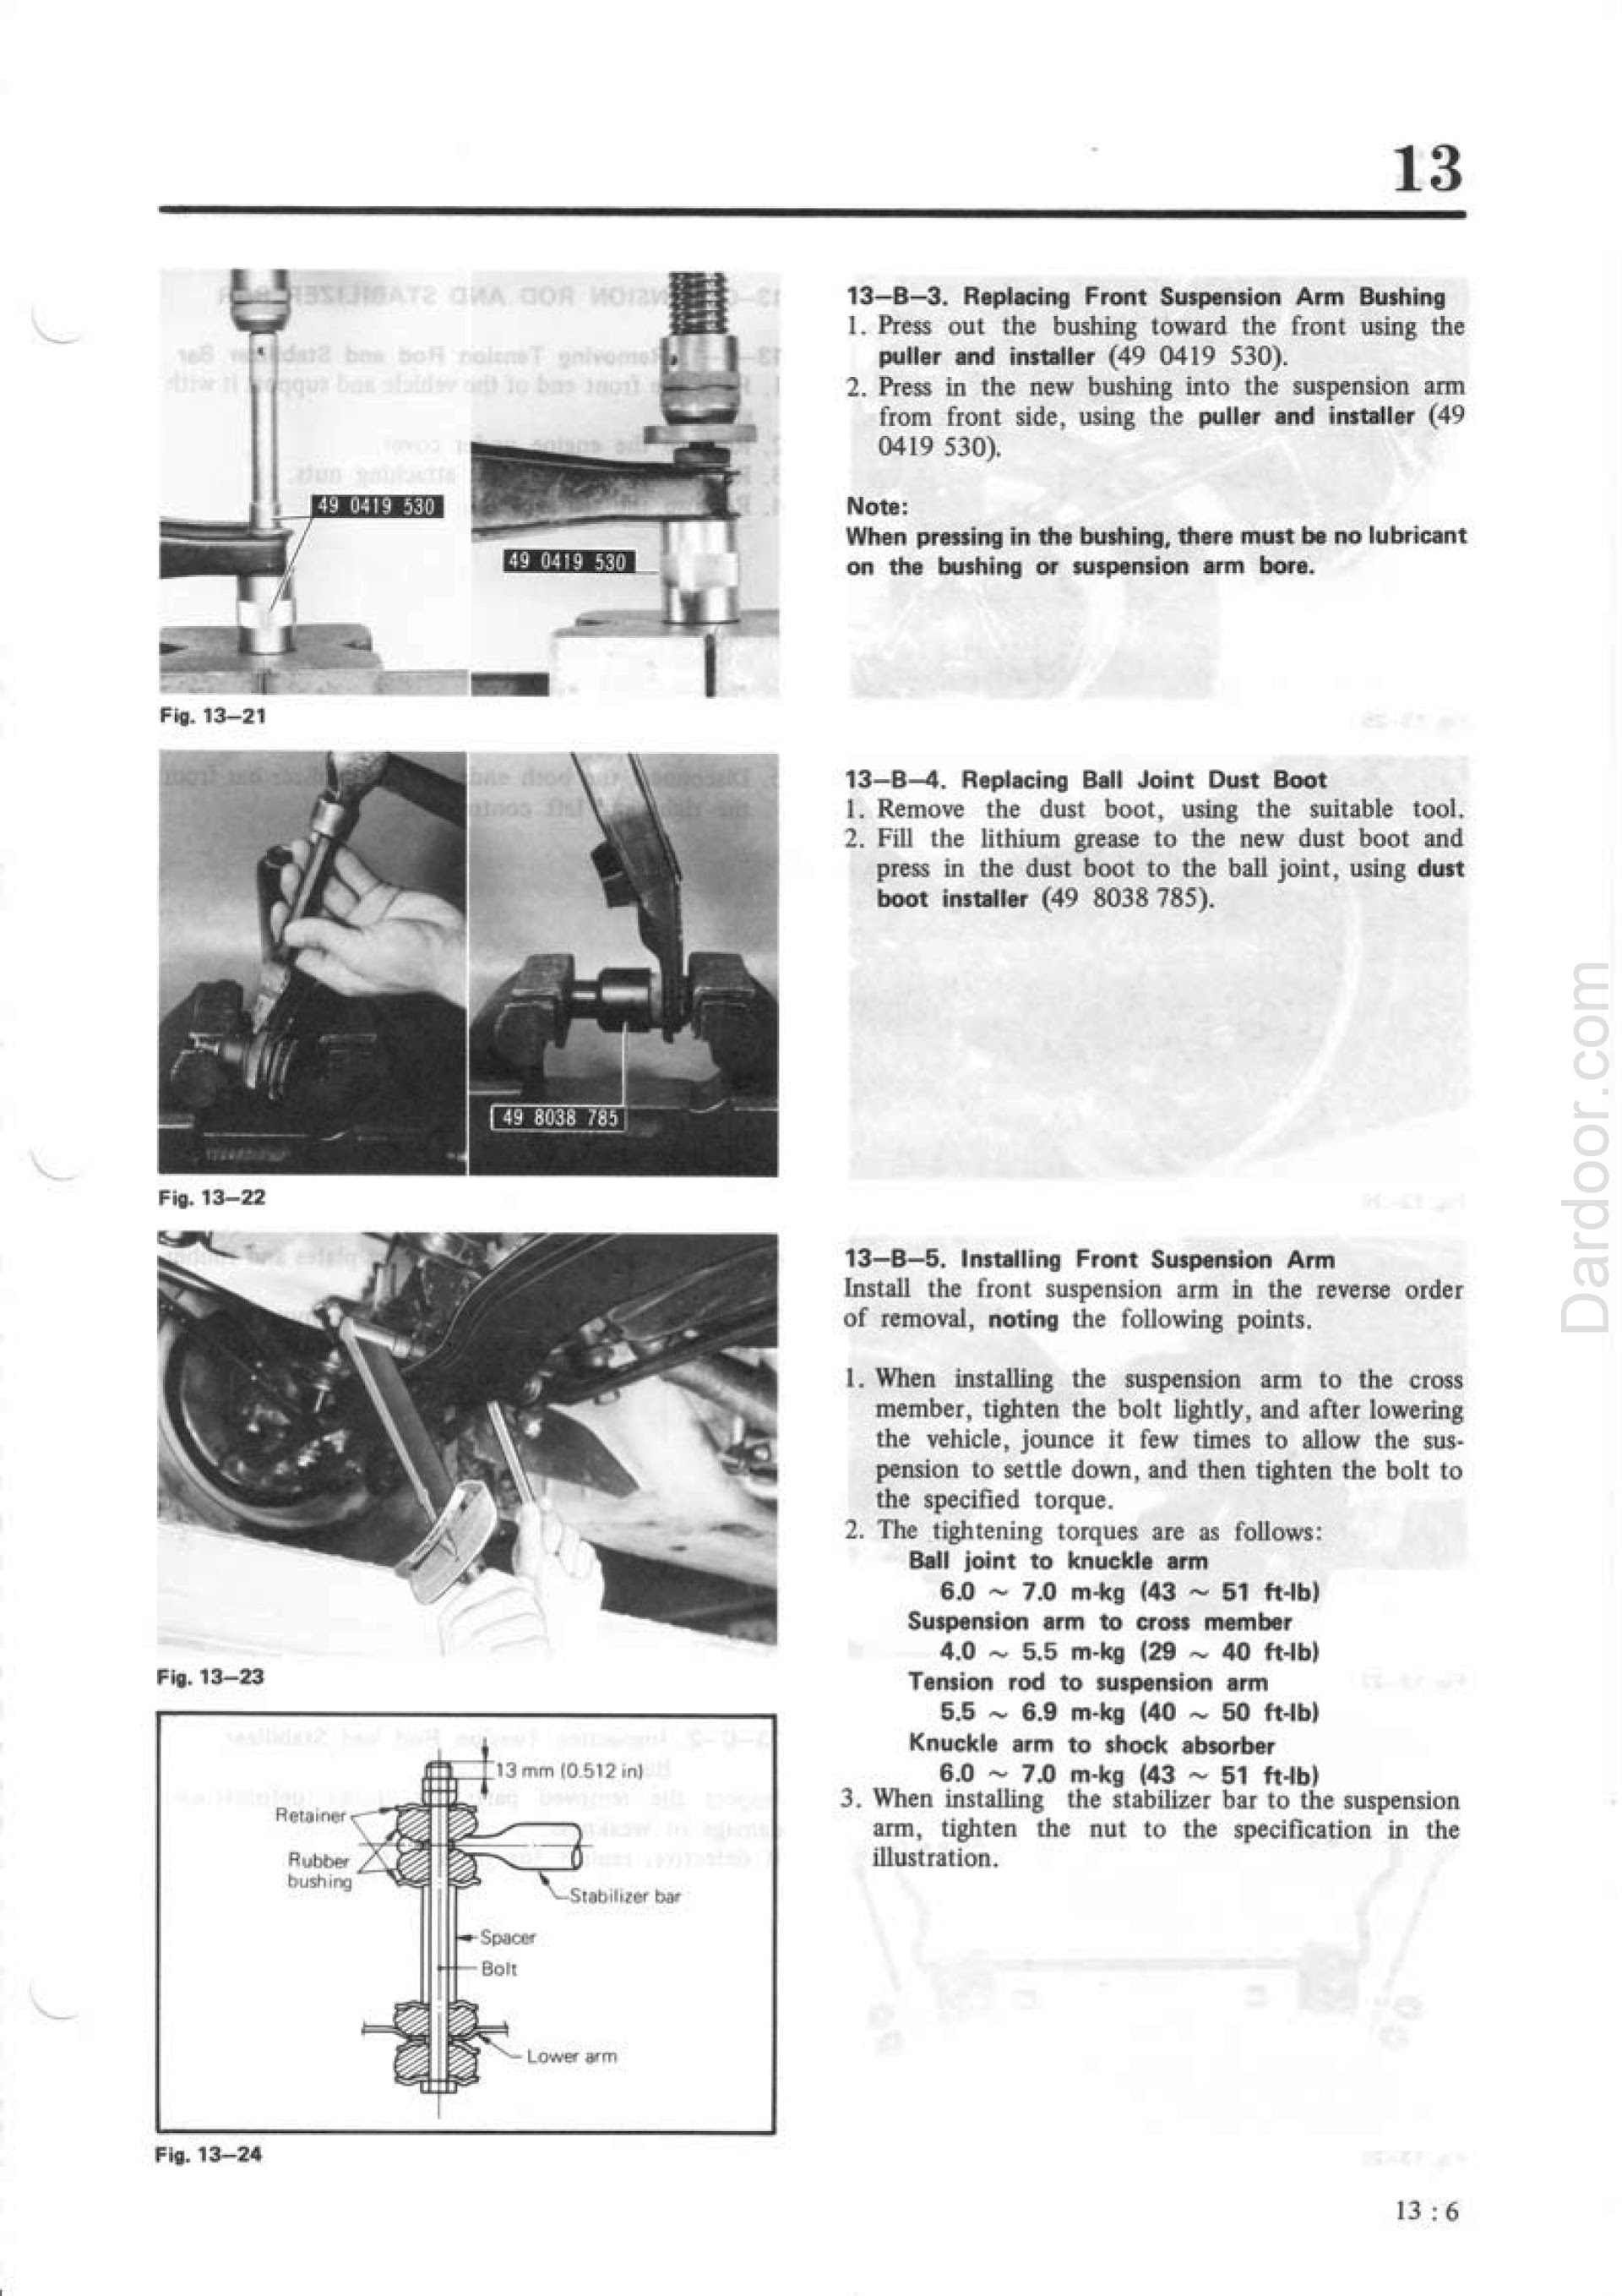 1980 Mazda RX7 repair manual pdf